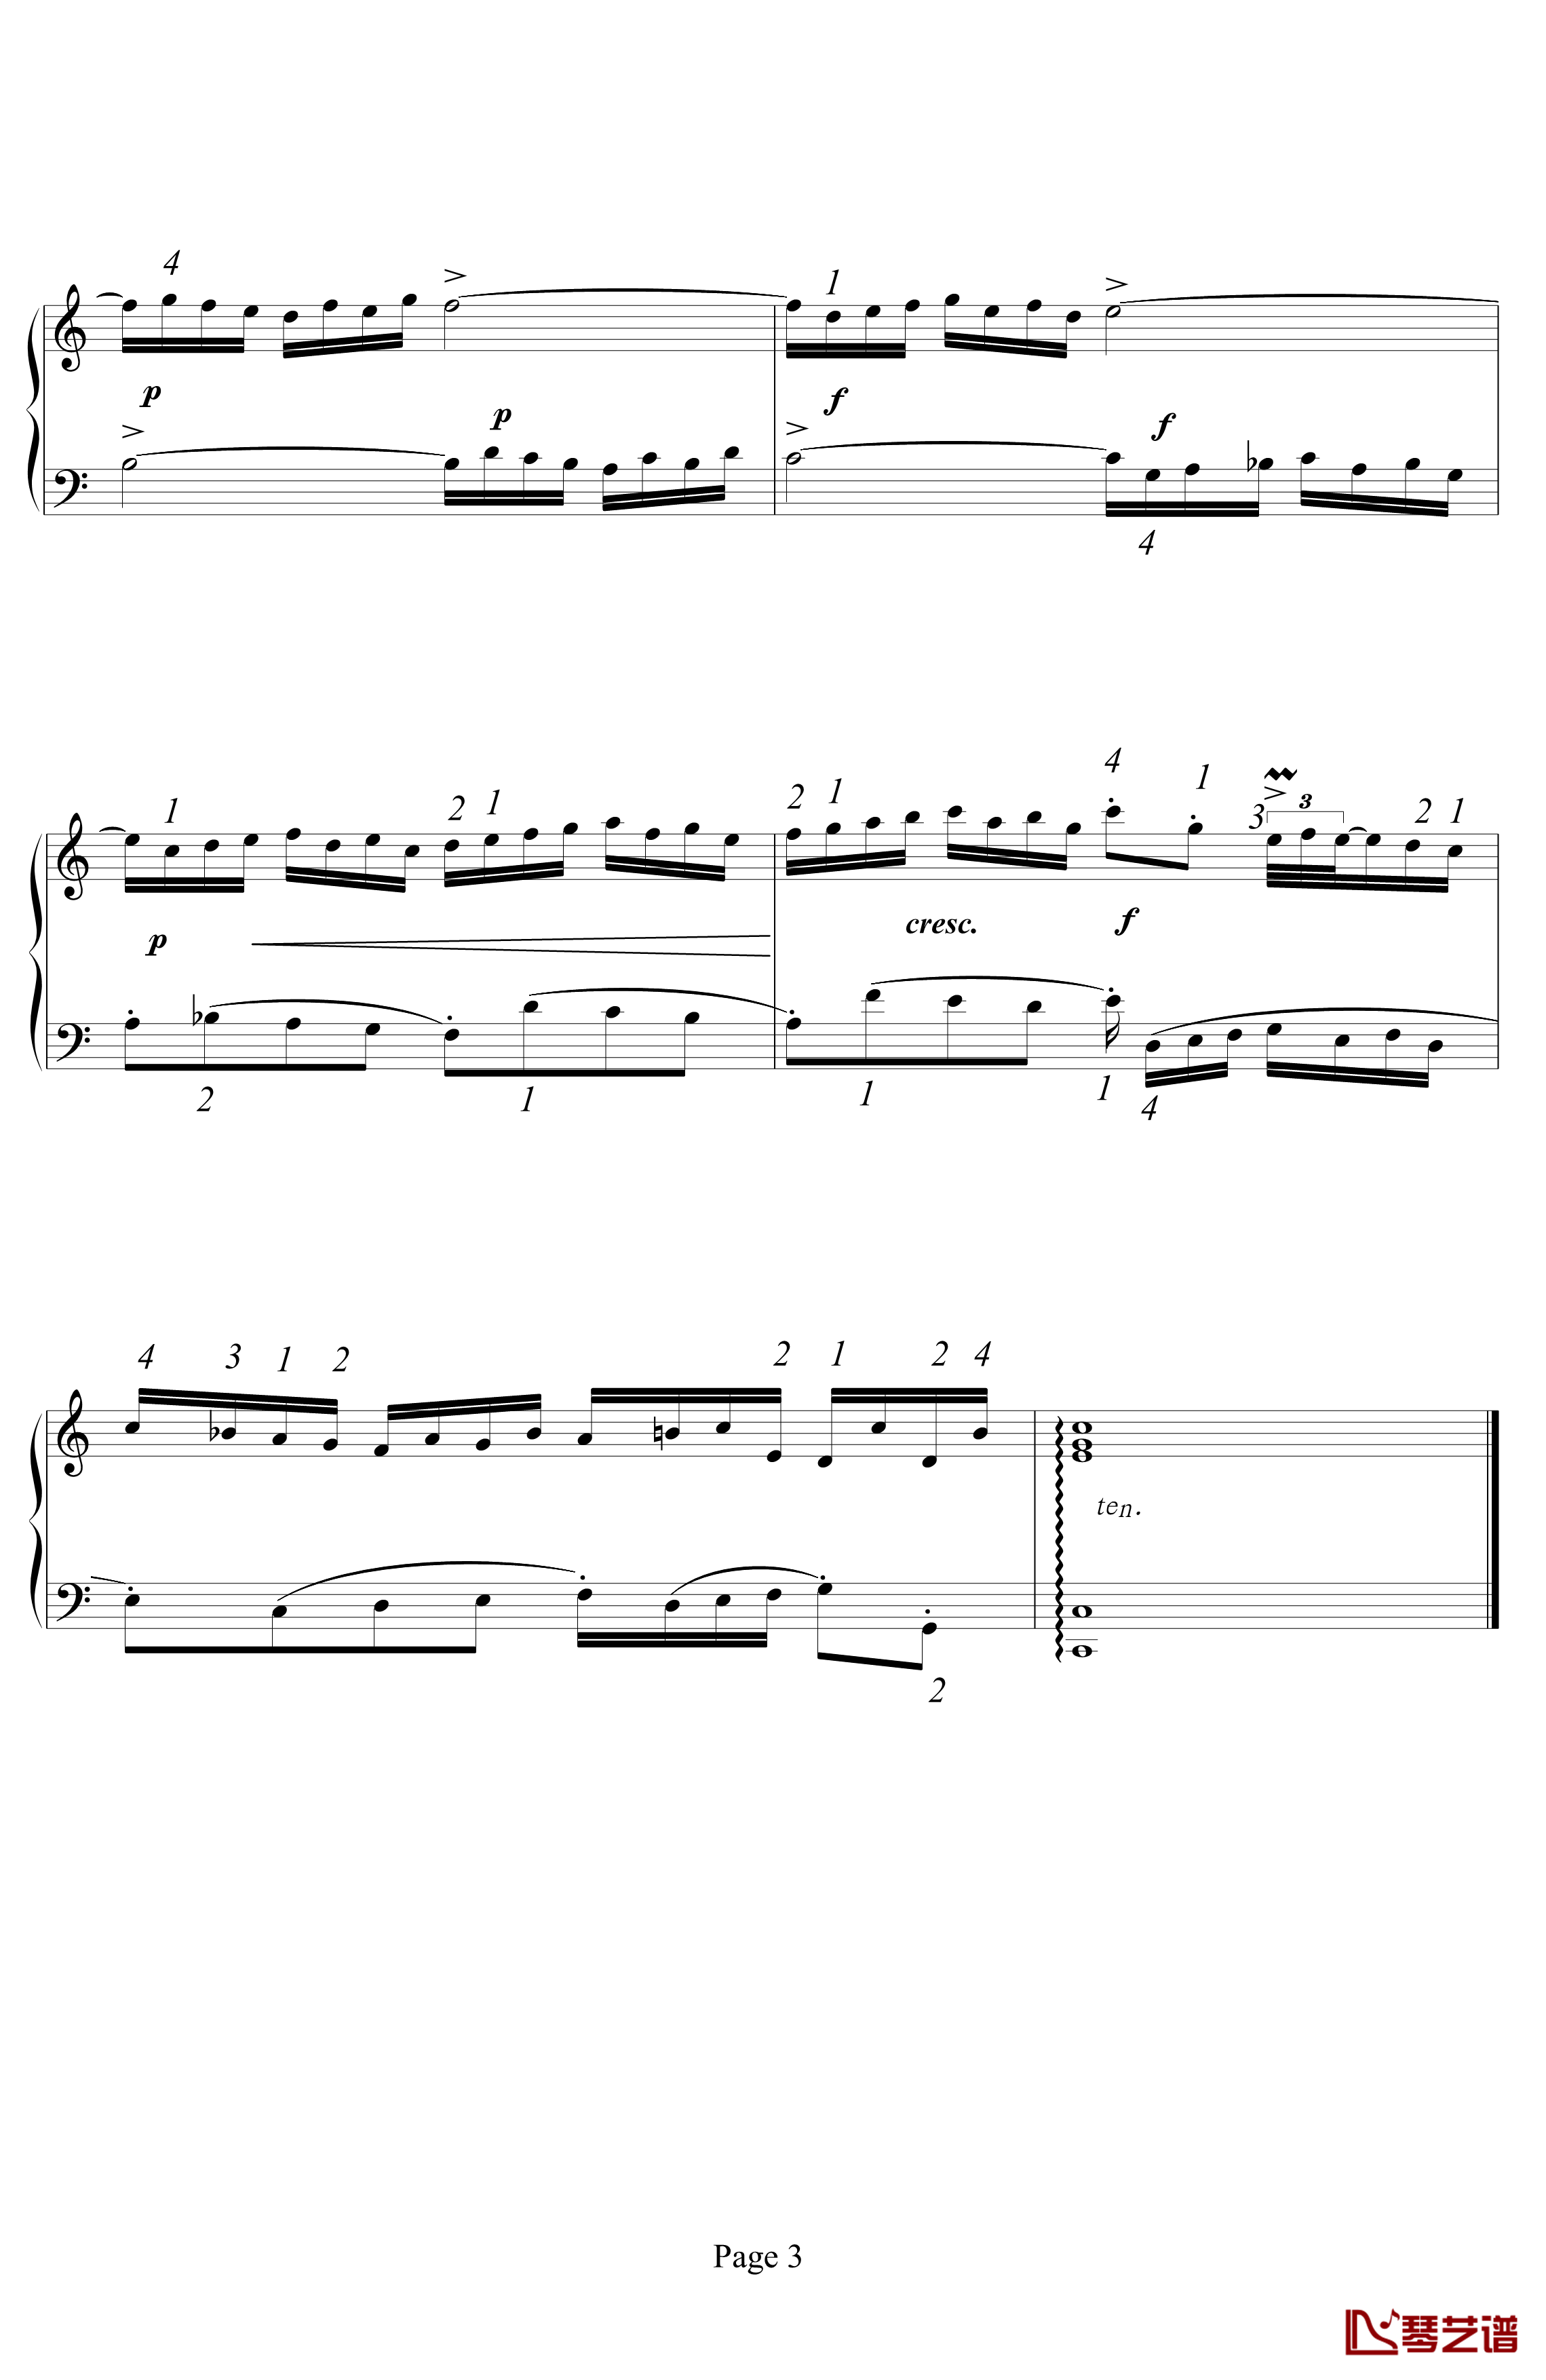 二部创意曲 NO.1钢琴谱-指法-巴赫-P.E.Bach3